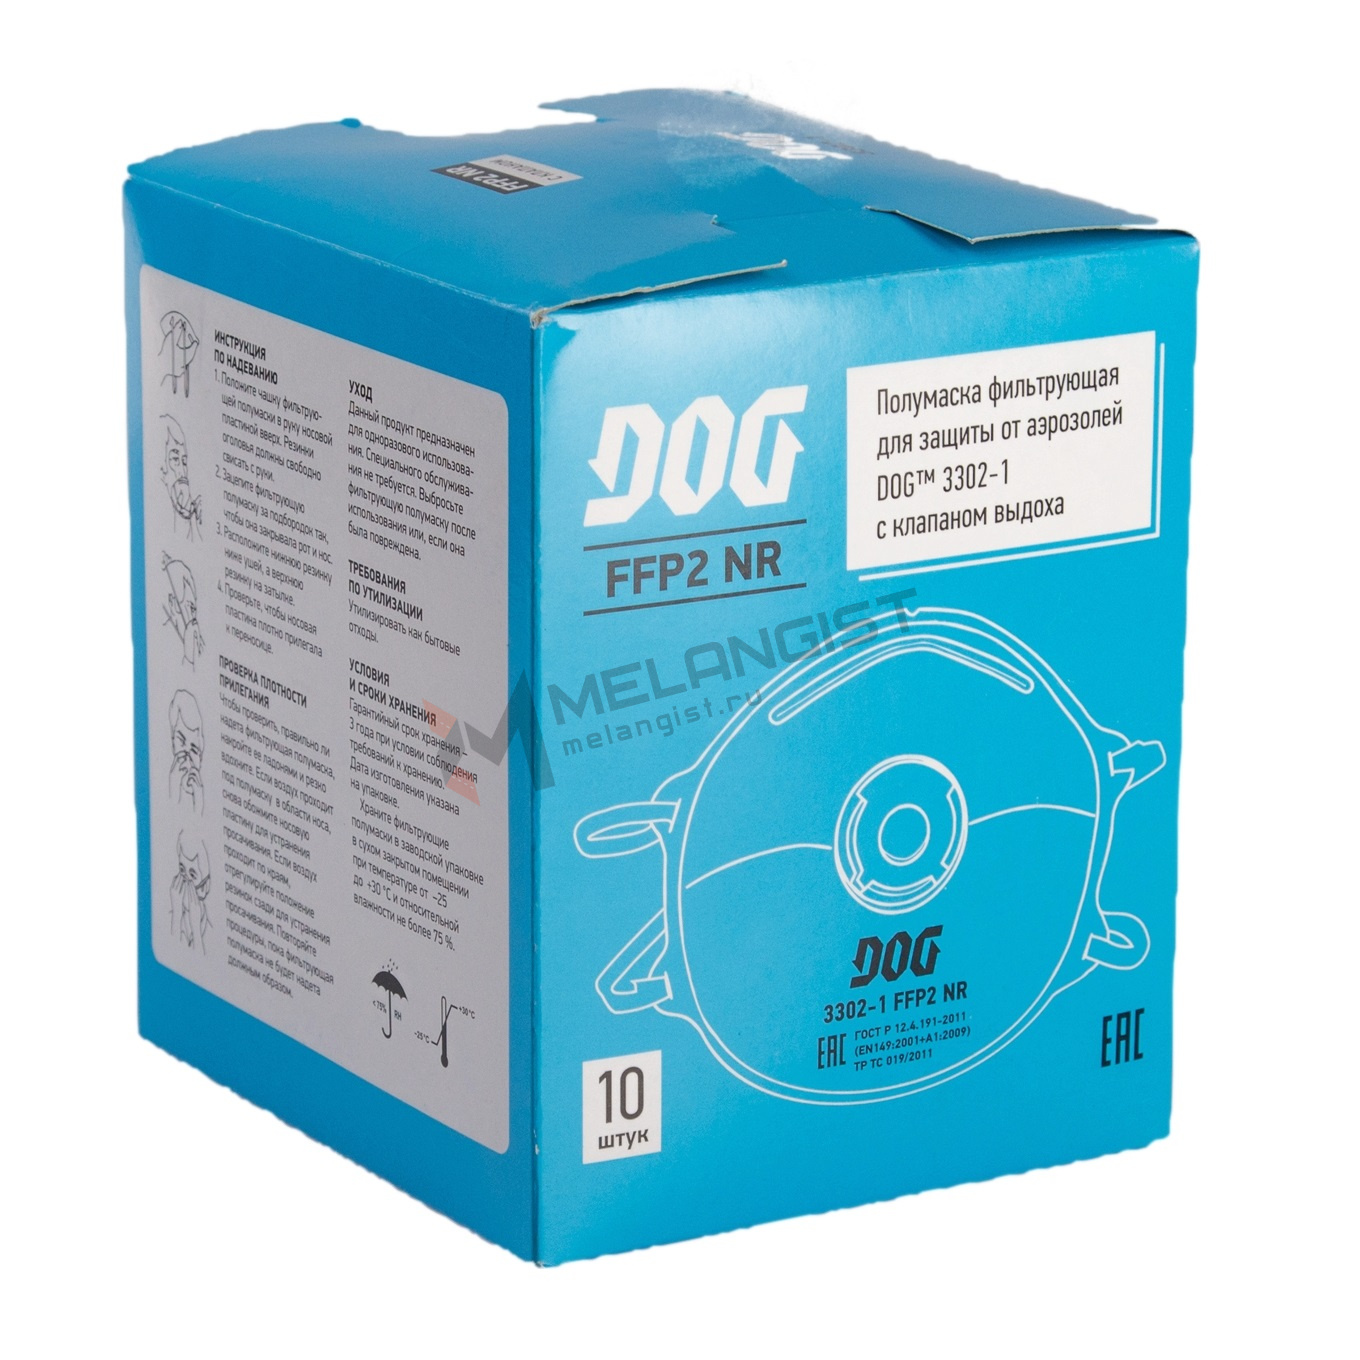 Полумаска фильтрующая (респиратор) DOG 3302-1 FFP2 NR